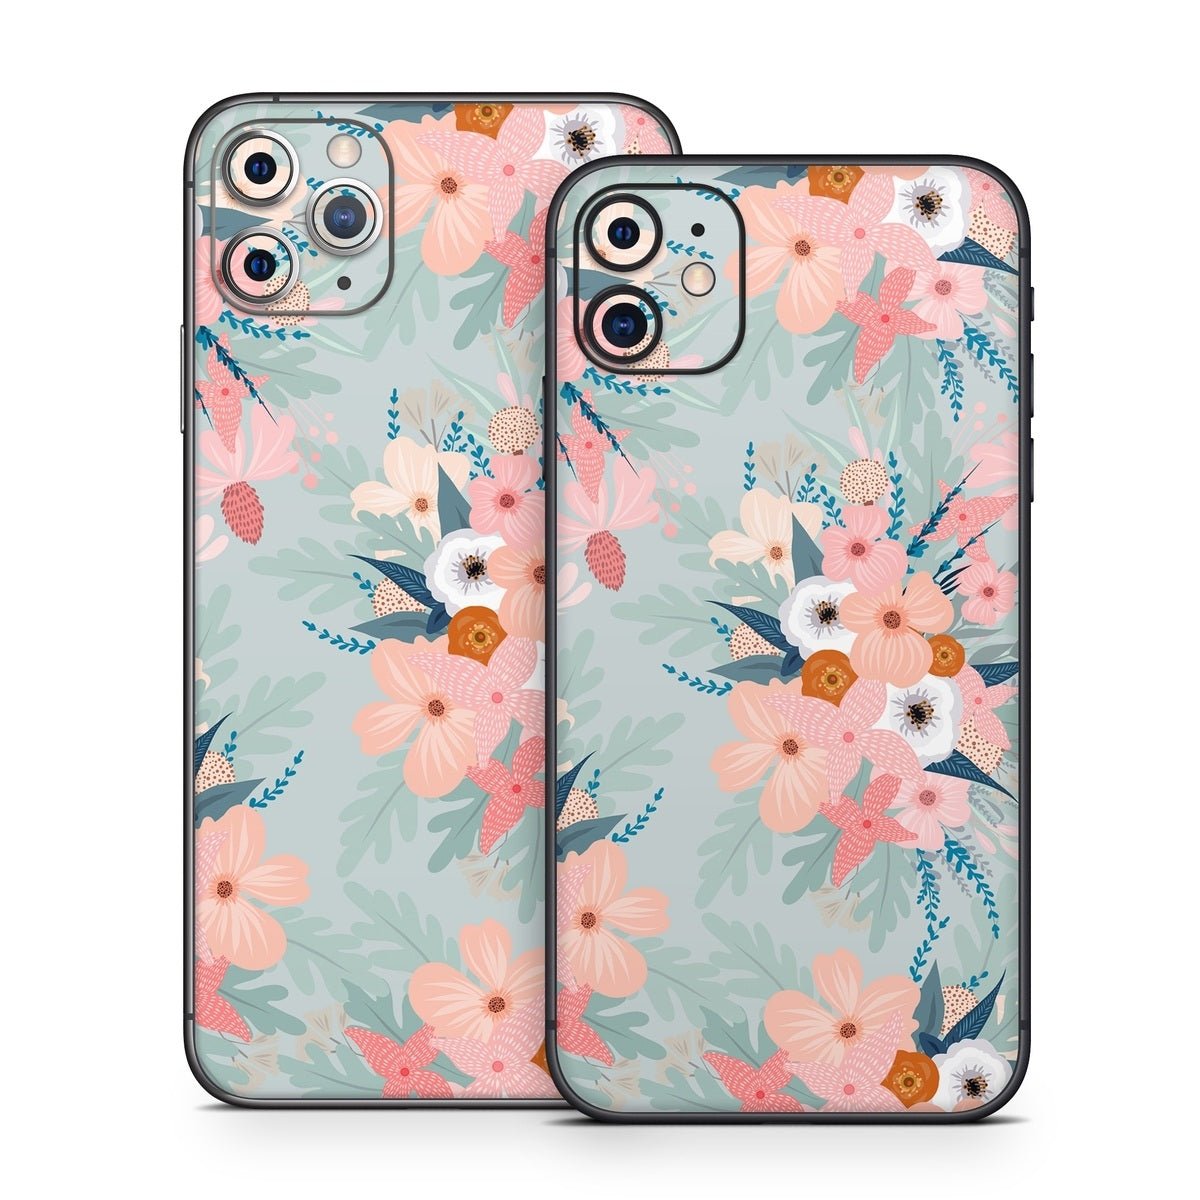 Ada Garden - Apple iPhone 11 Skin - Iveta Abolina - DecalGirl